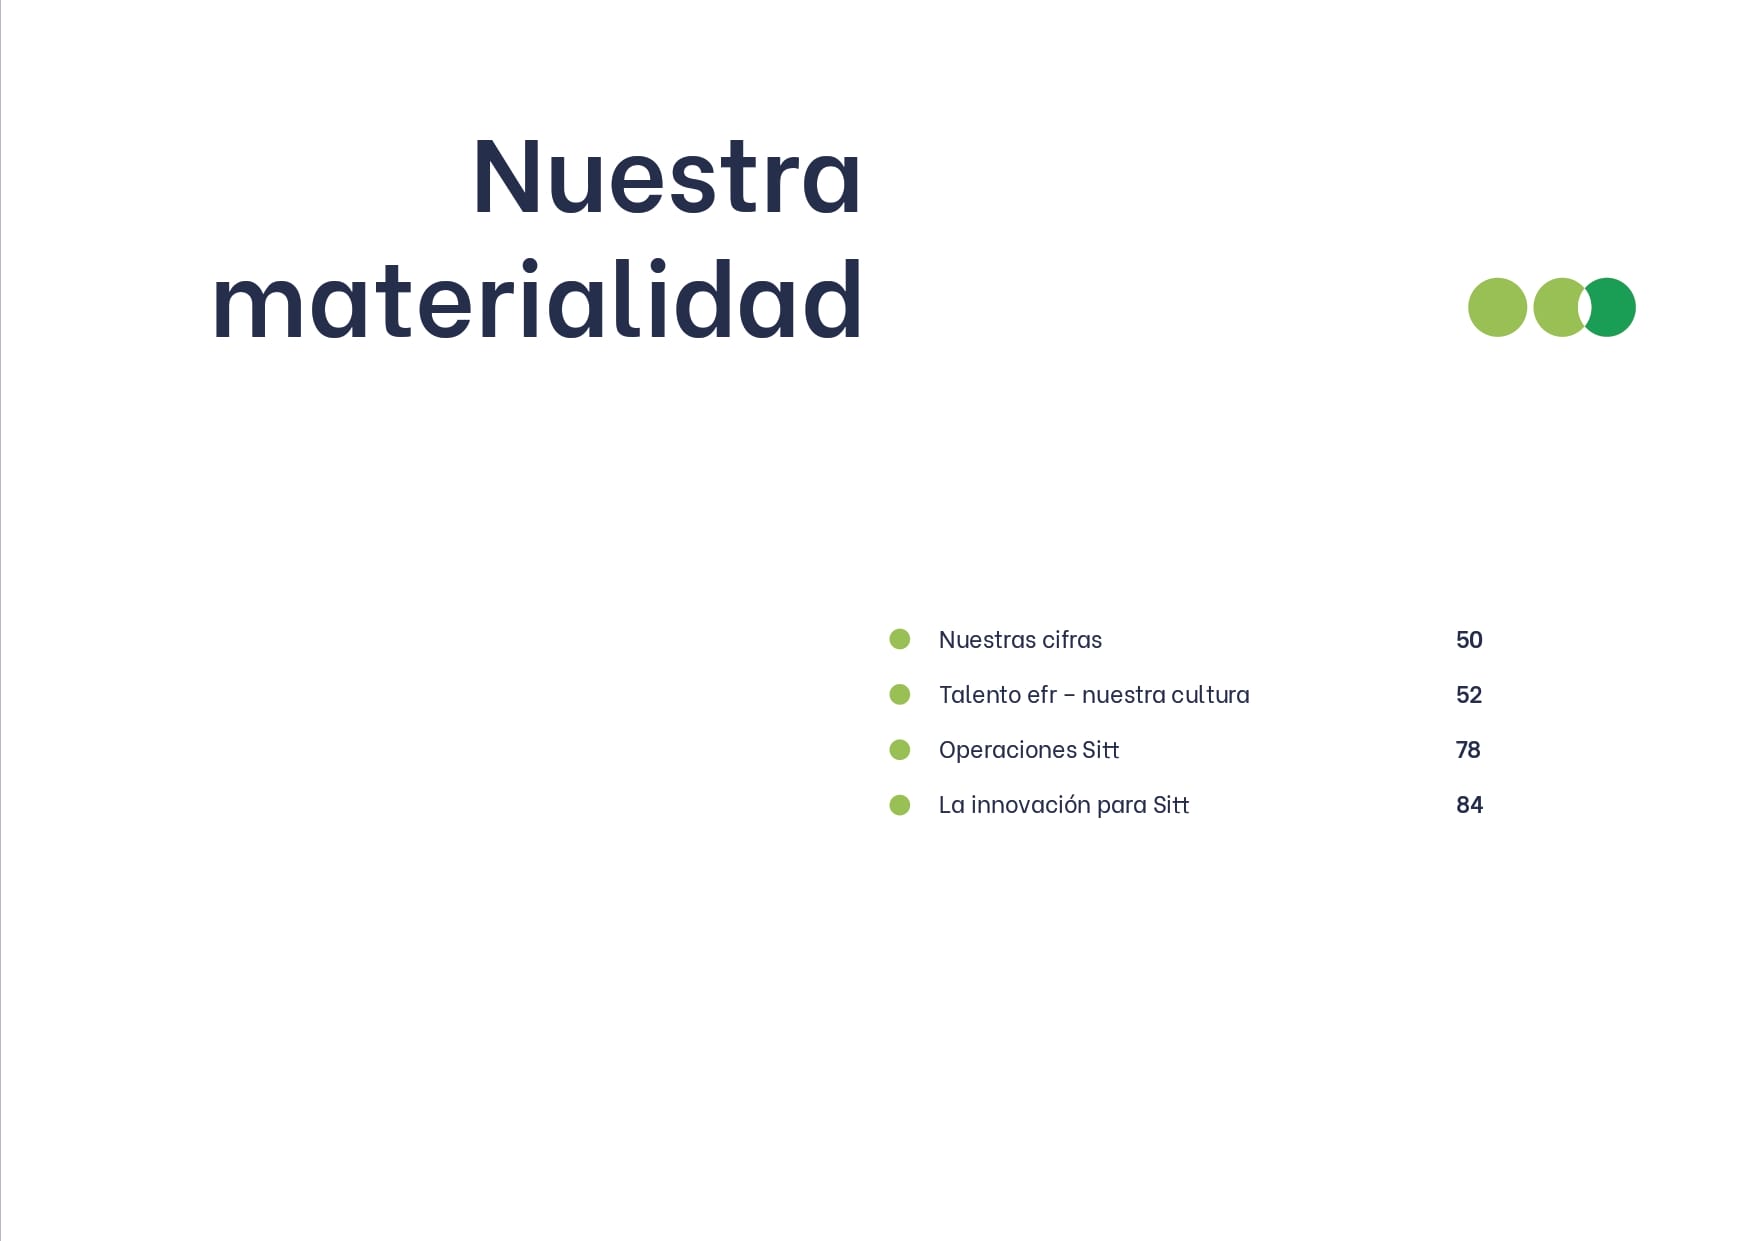 Diapositiva titulada "Nuestra Materialidad" con una lista de temas y números: te presentamos nuestras cifras 50, operaciones sitio 52, talento rr - nuestra cultura 84,